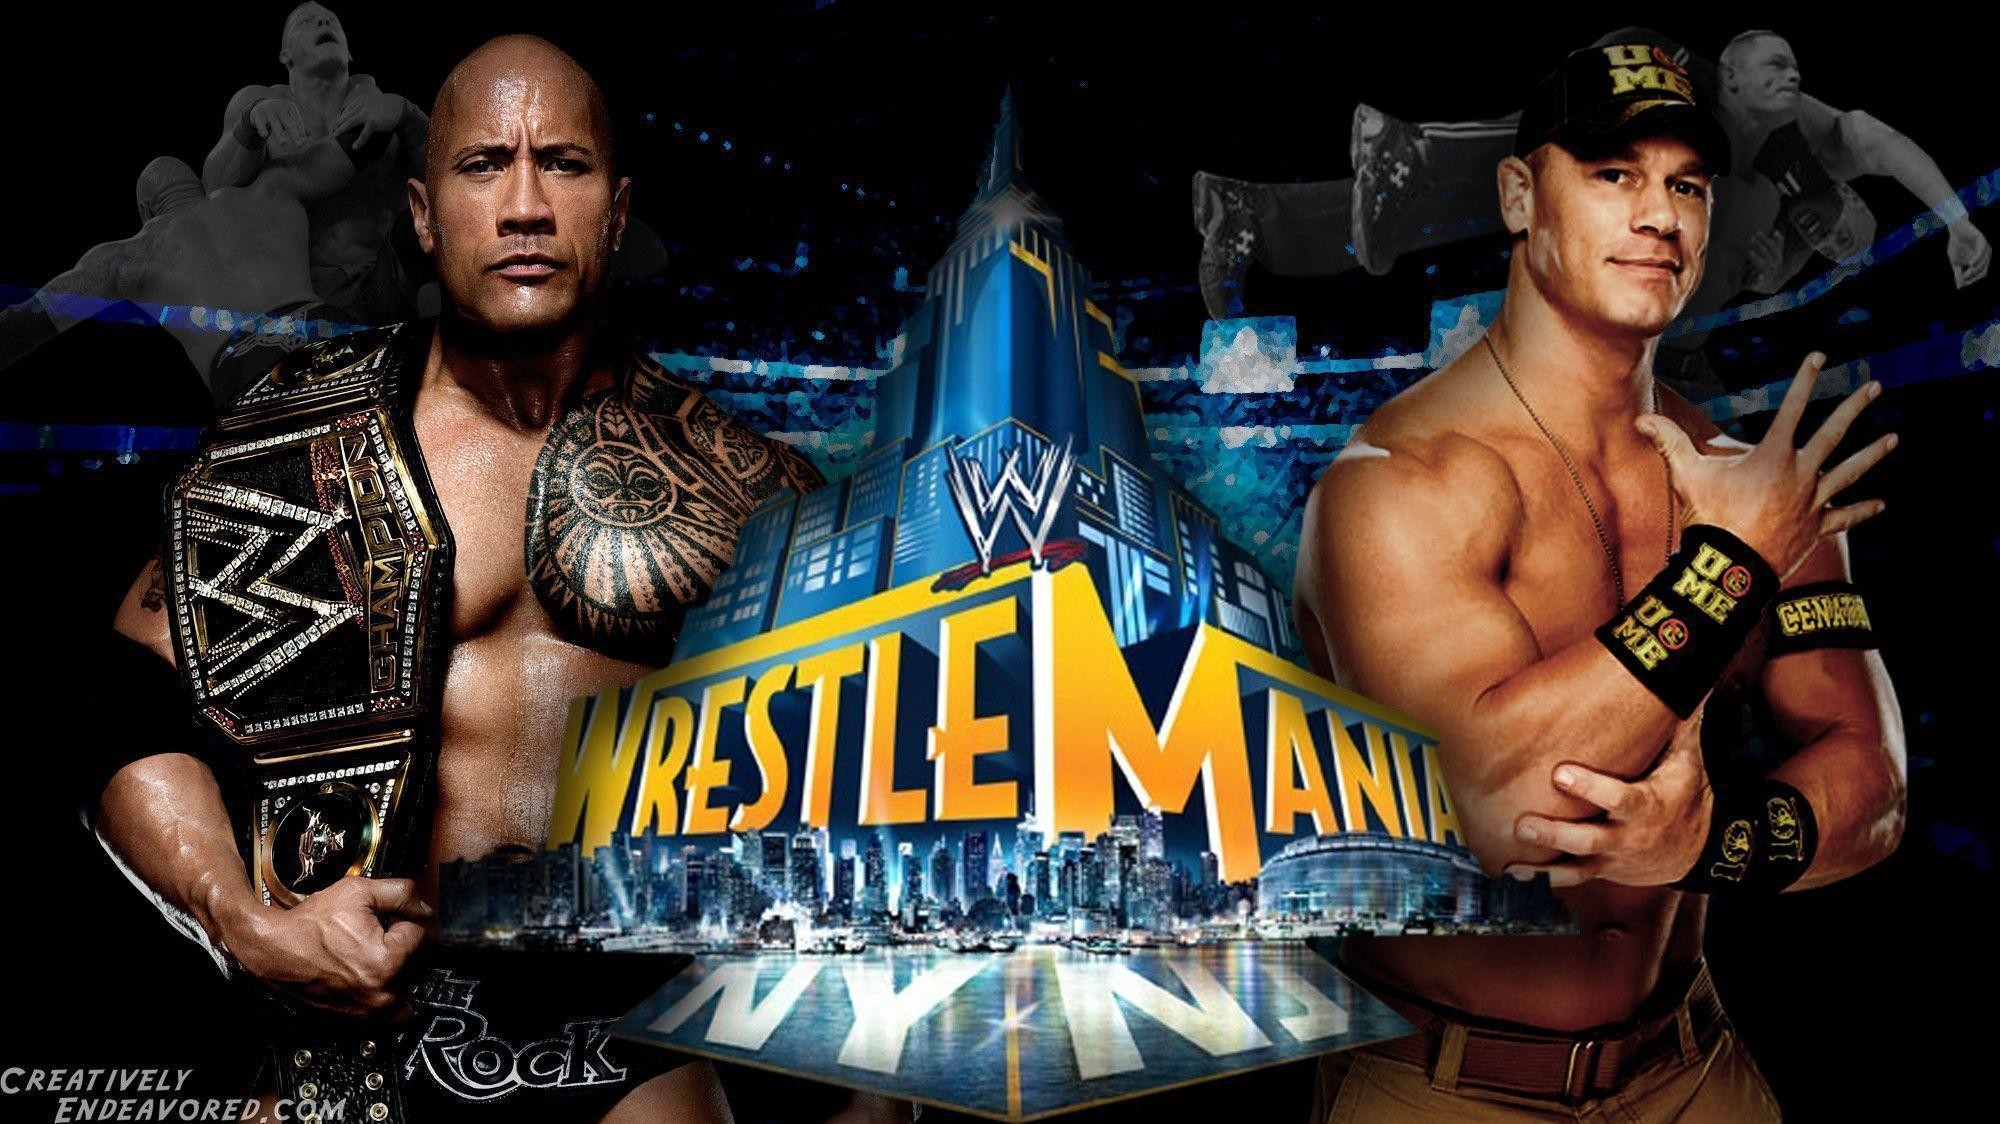 2000x1124 WrestleMania Wallpaper Wednesday: The Rock vs John Cena for the .